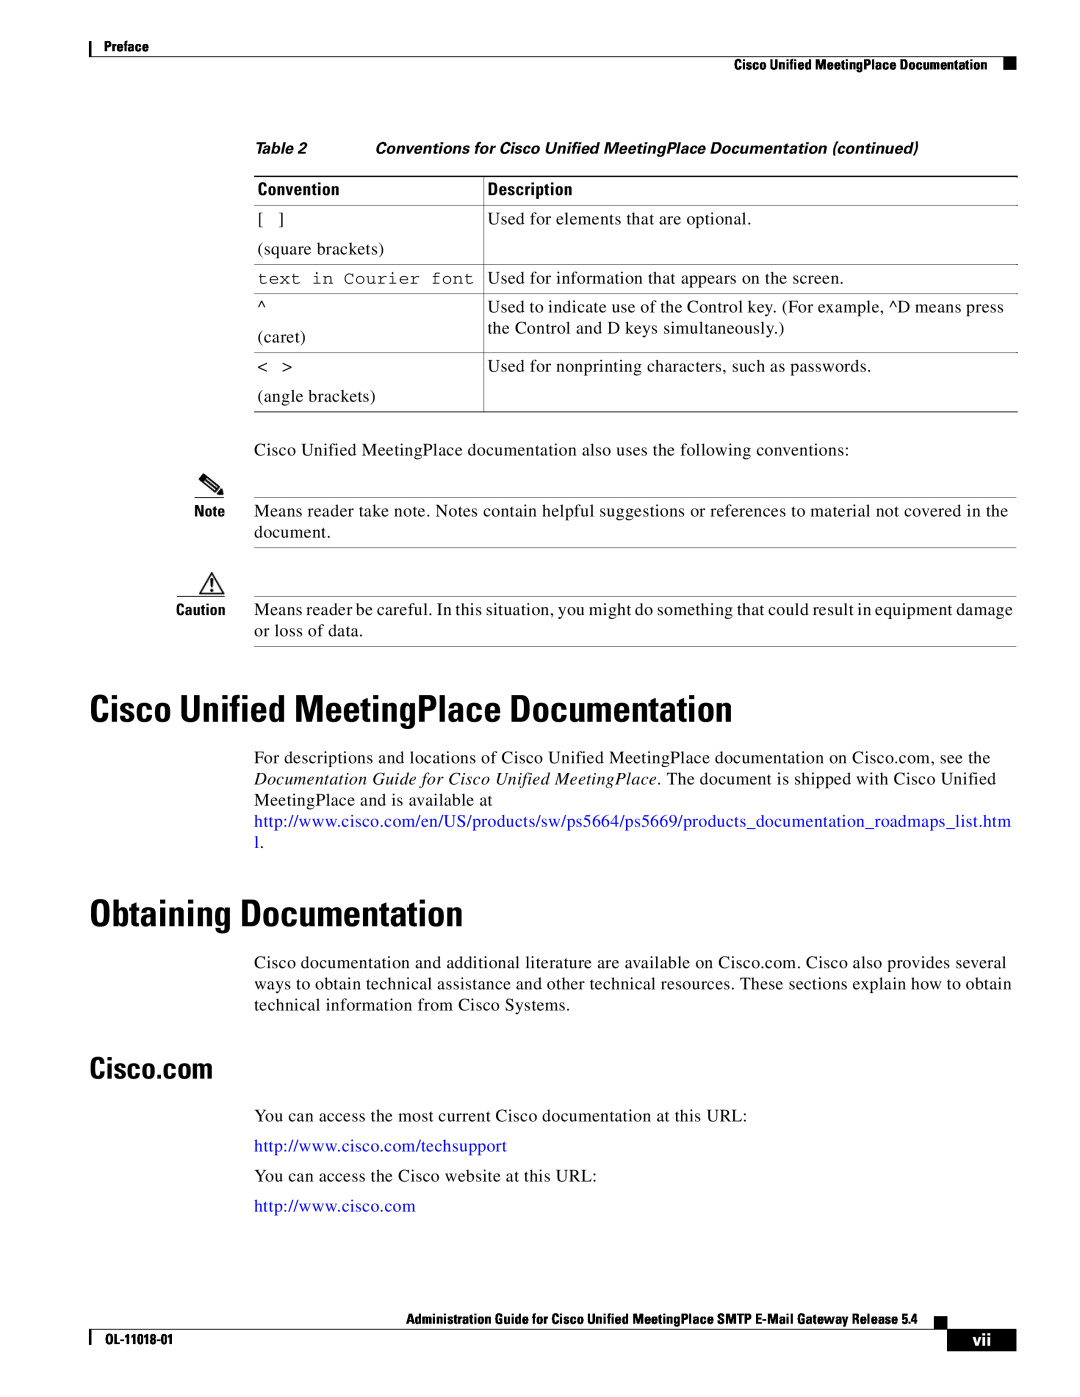 Cisco Systems SMTP Cisco Unified MeetingPlace Documentation, Obtaining Documentation, Cisco.com, Convention, Description 